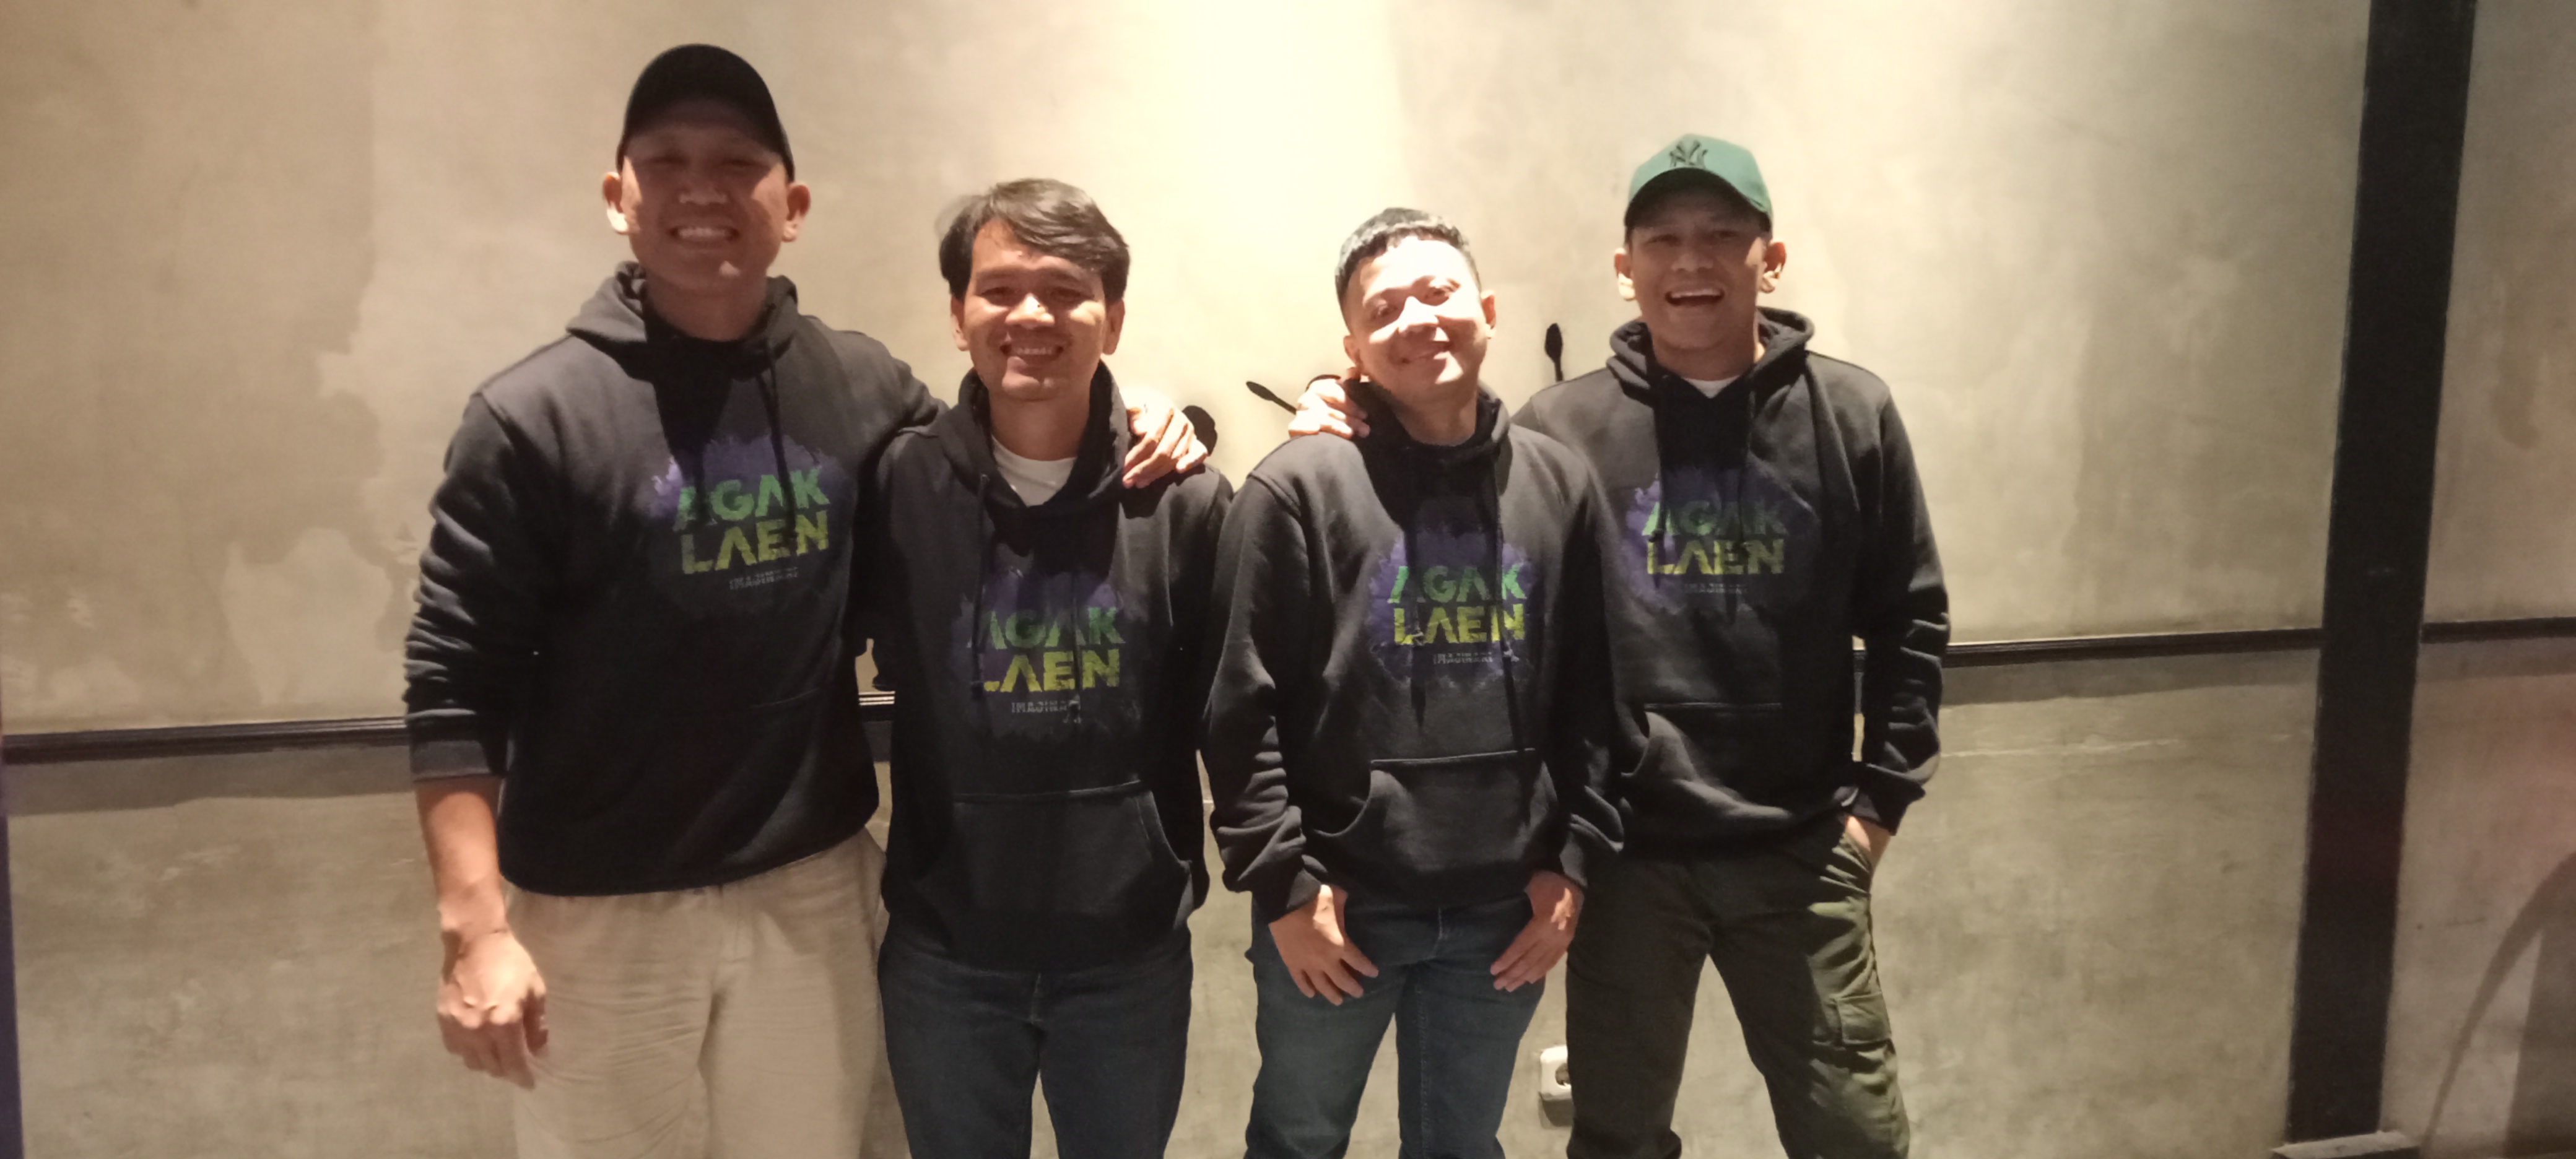 Para pemain film 'Agak laen 'saat road show di Pekanbaru